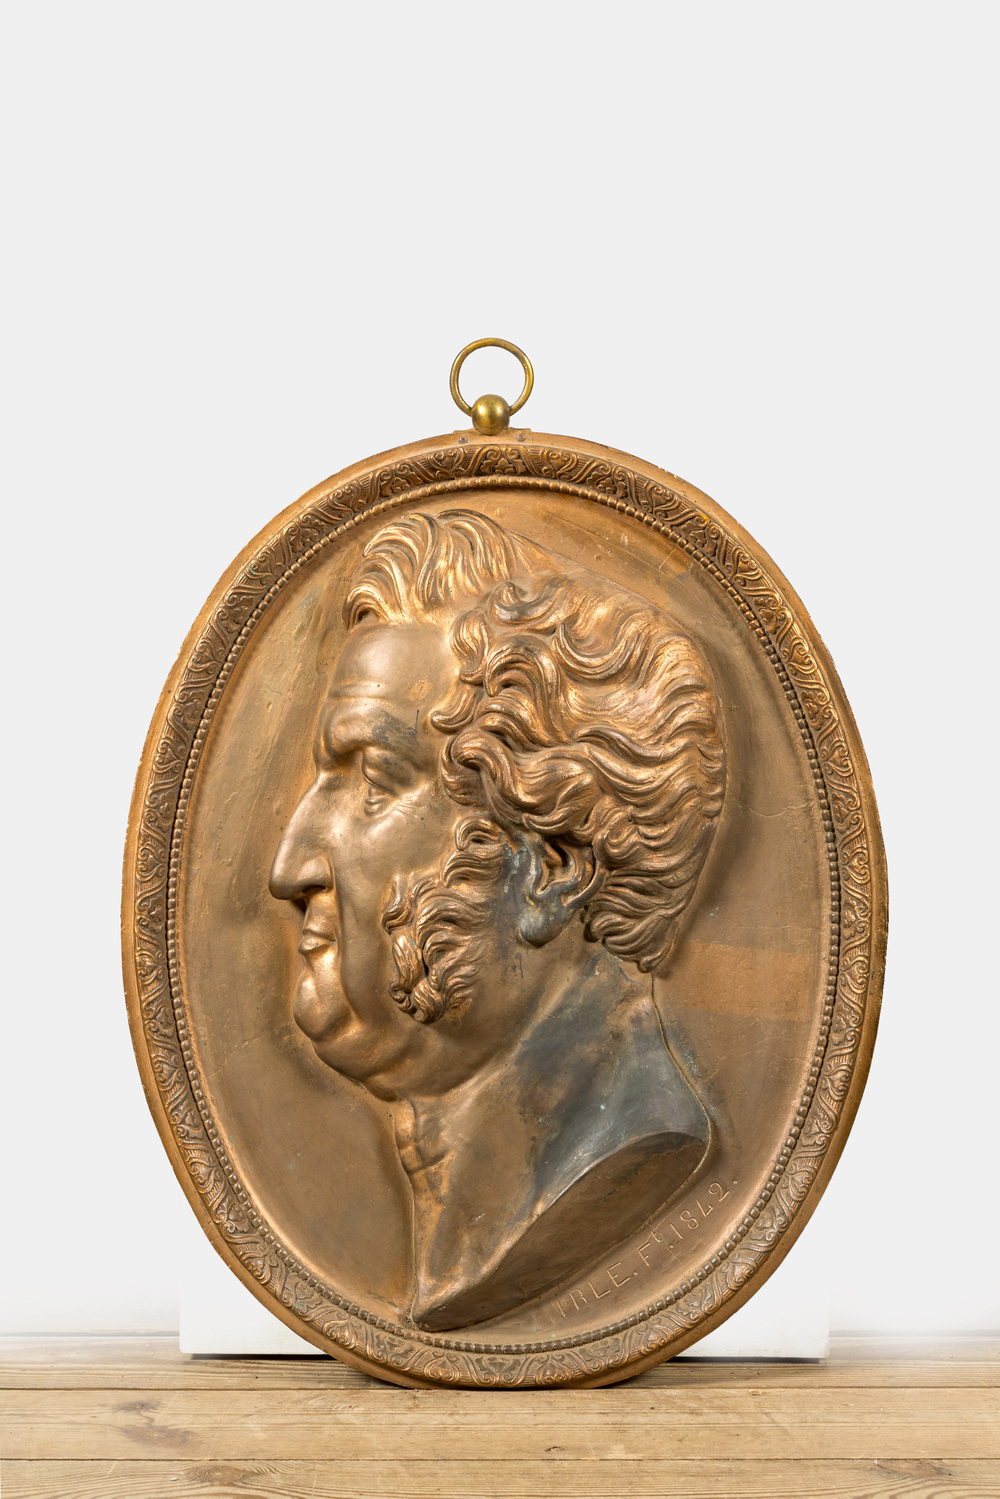 A gilt bronze plaque with a profile portrait of a man, 19th C.